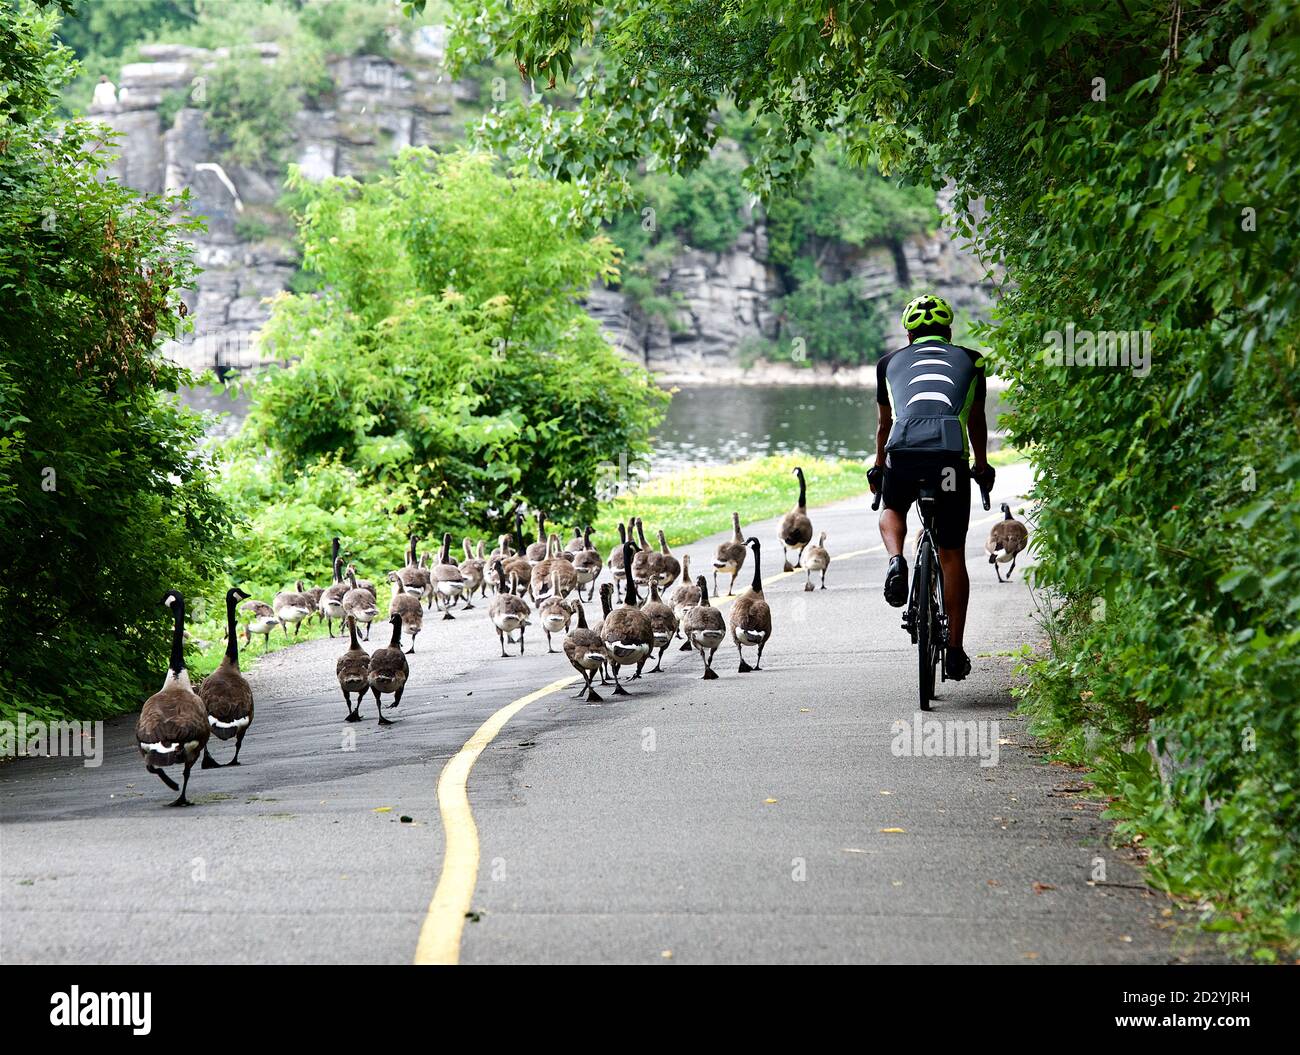 Ottawa, Canada - 13 lug,2016: Ciclista che passa gruppo di anatre che attraversano la strada nel parco della città. Uccelli selvatici che camminano nel parco di Ottawa, Canada Foto Stock